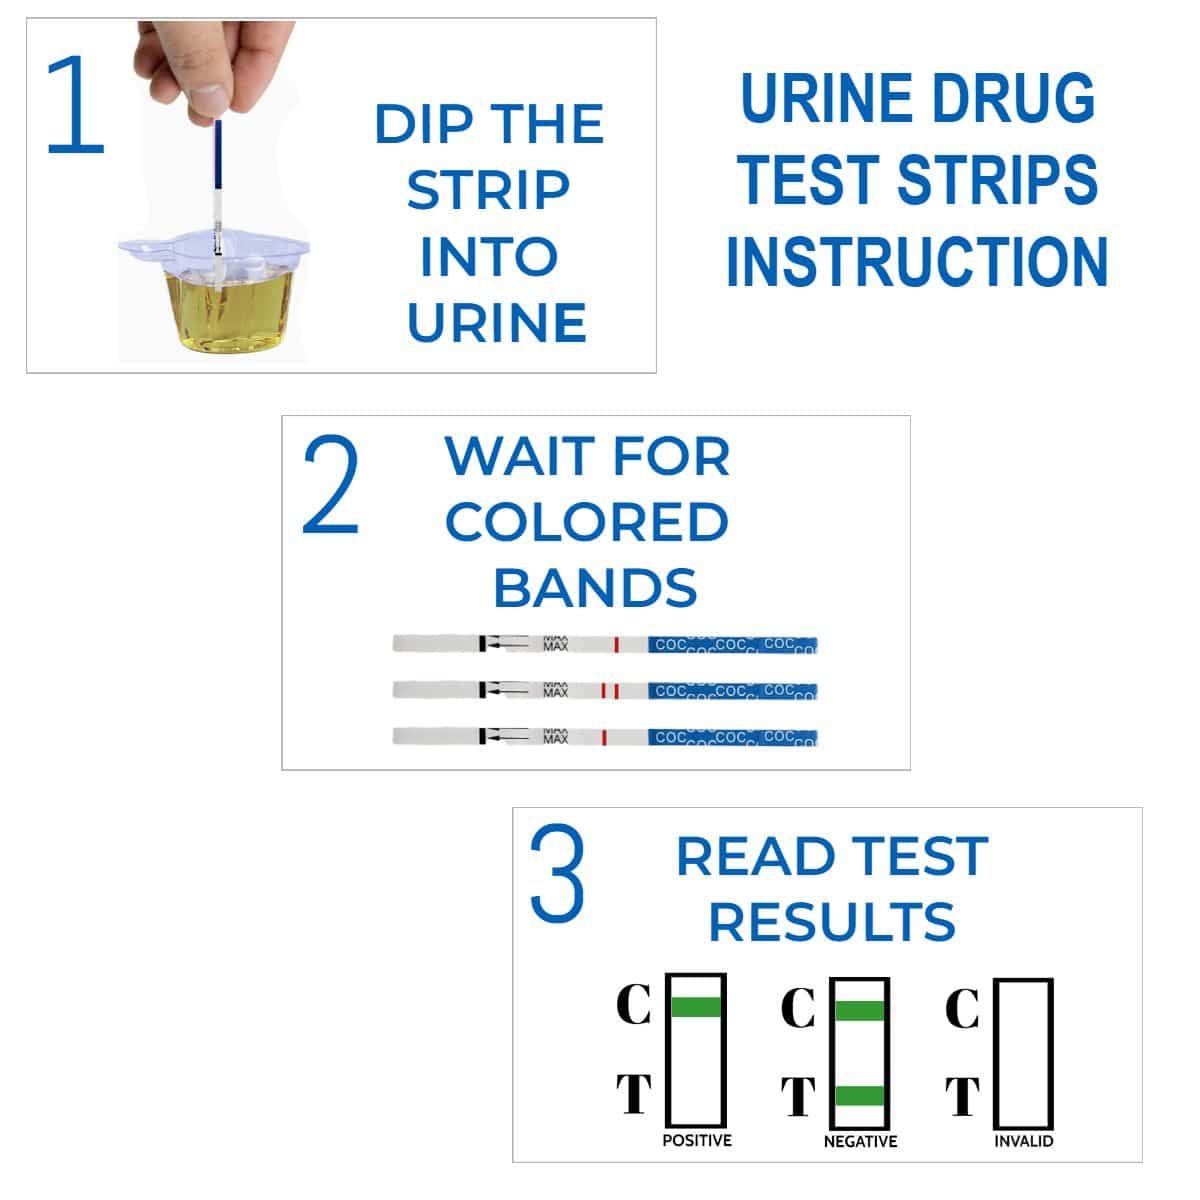 OVUS MEDICAL URINE DRUG TEST STRIP INSTRUCTION